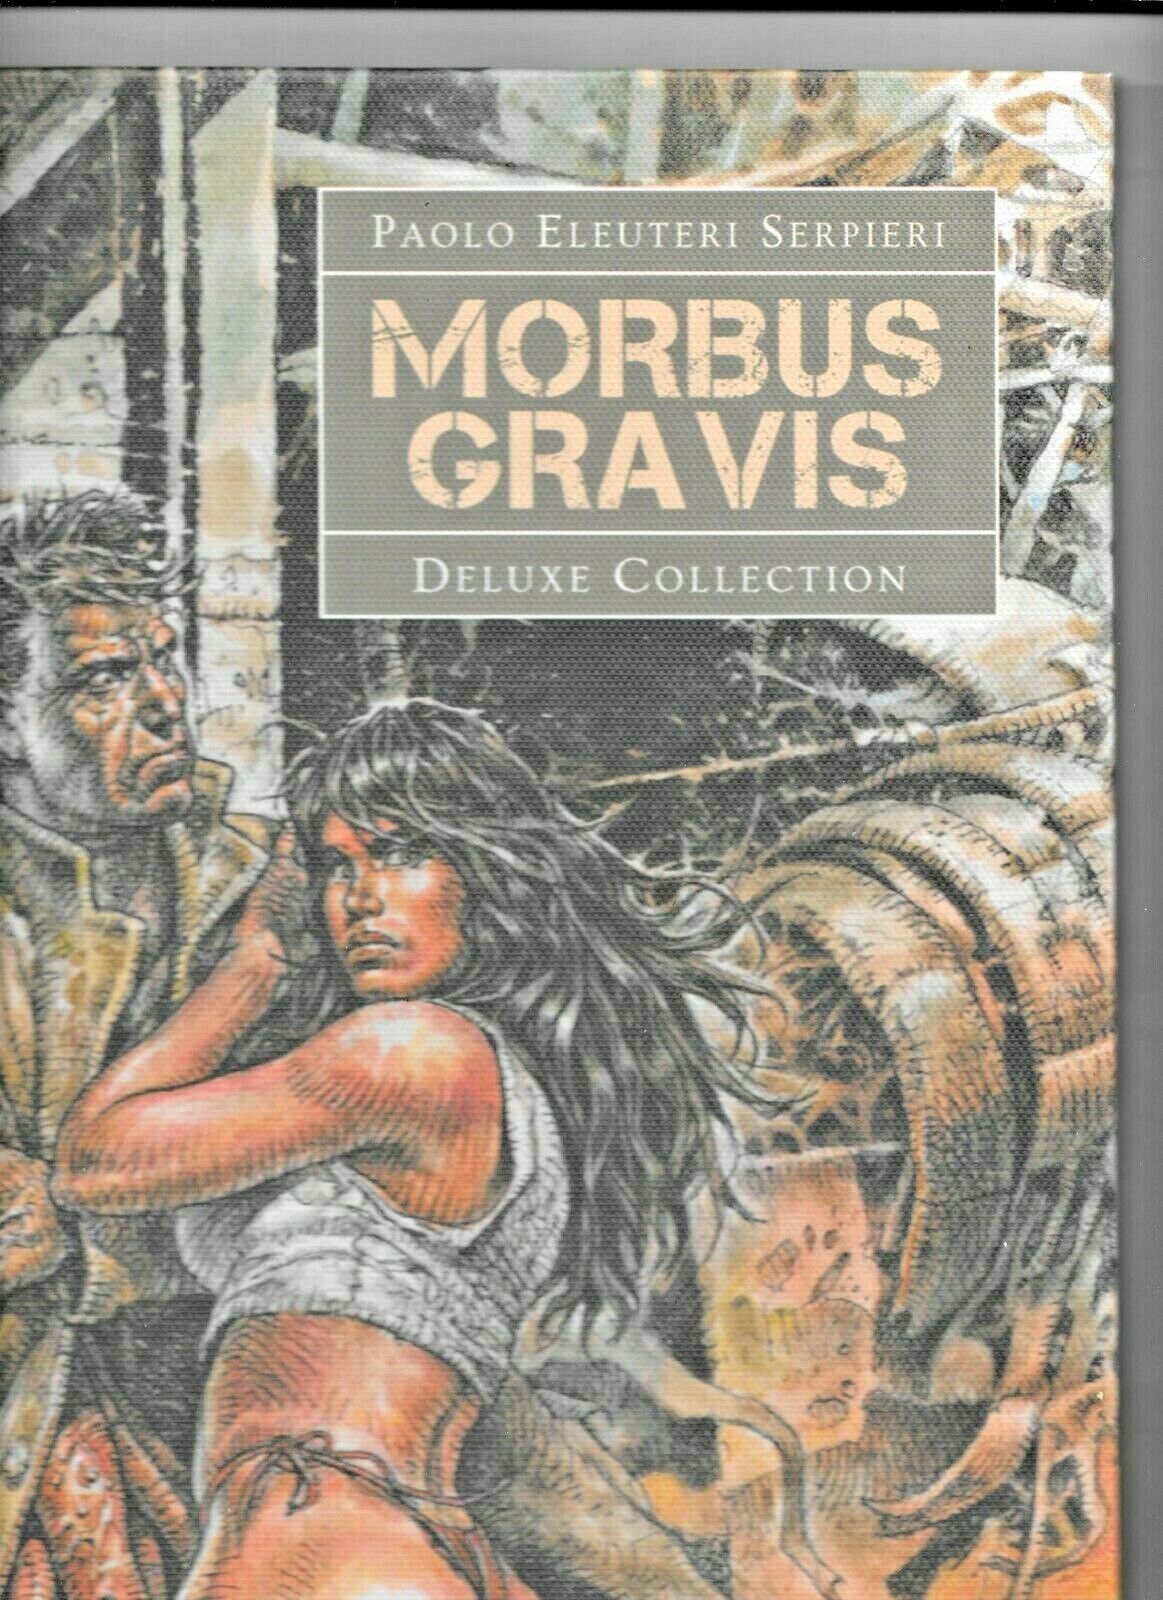 Serpieri Morbus Gravis Deluxe 2019 Lo Scarabeo Druuna 523/700 Hardcover 16X12 VF